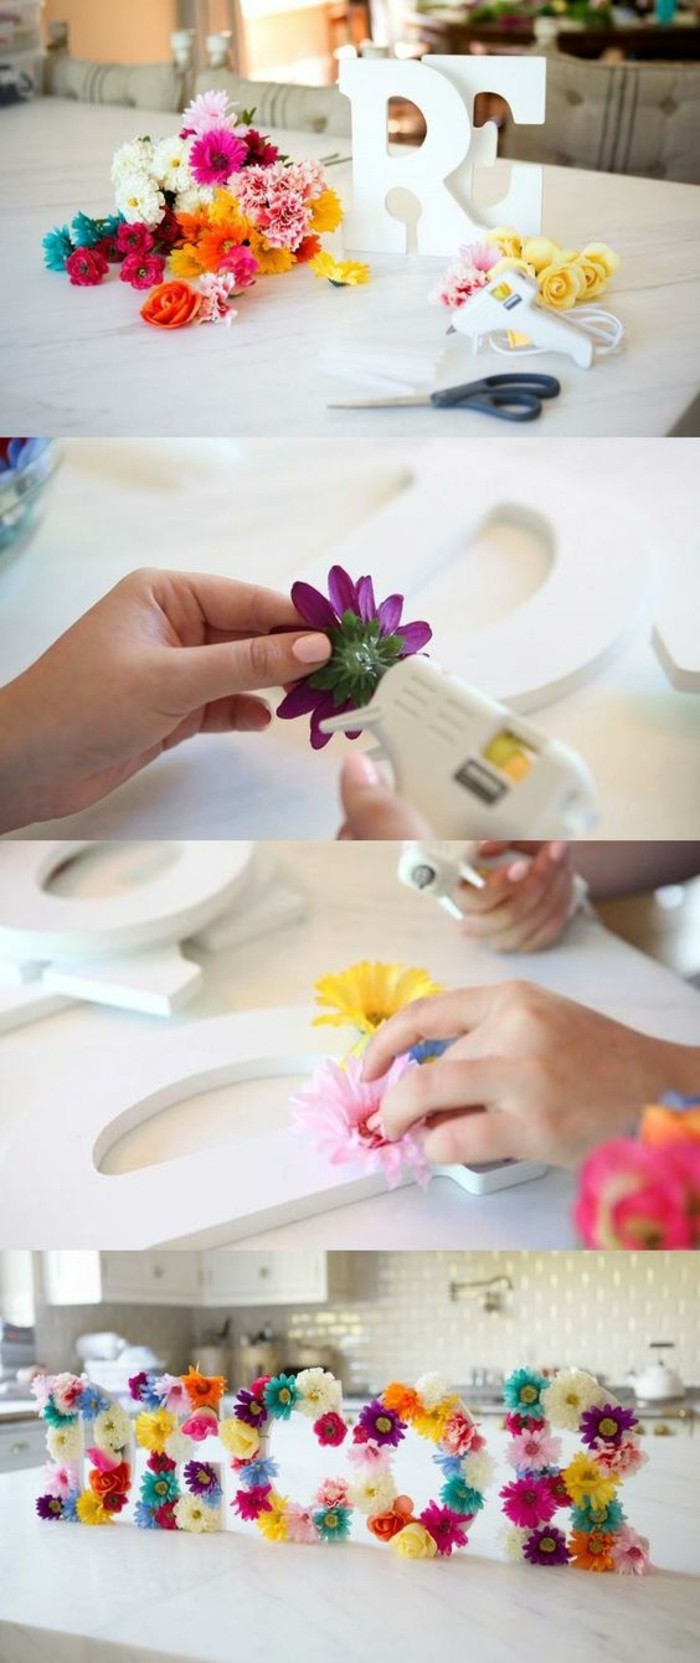 deco-florale-grandes-lettres-fleuries-pour-decorer-sa-cuisine-idée-activité-créative-de-printemps-à-réaliser-soi-meme